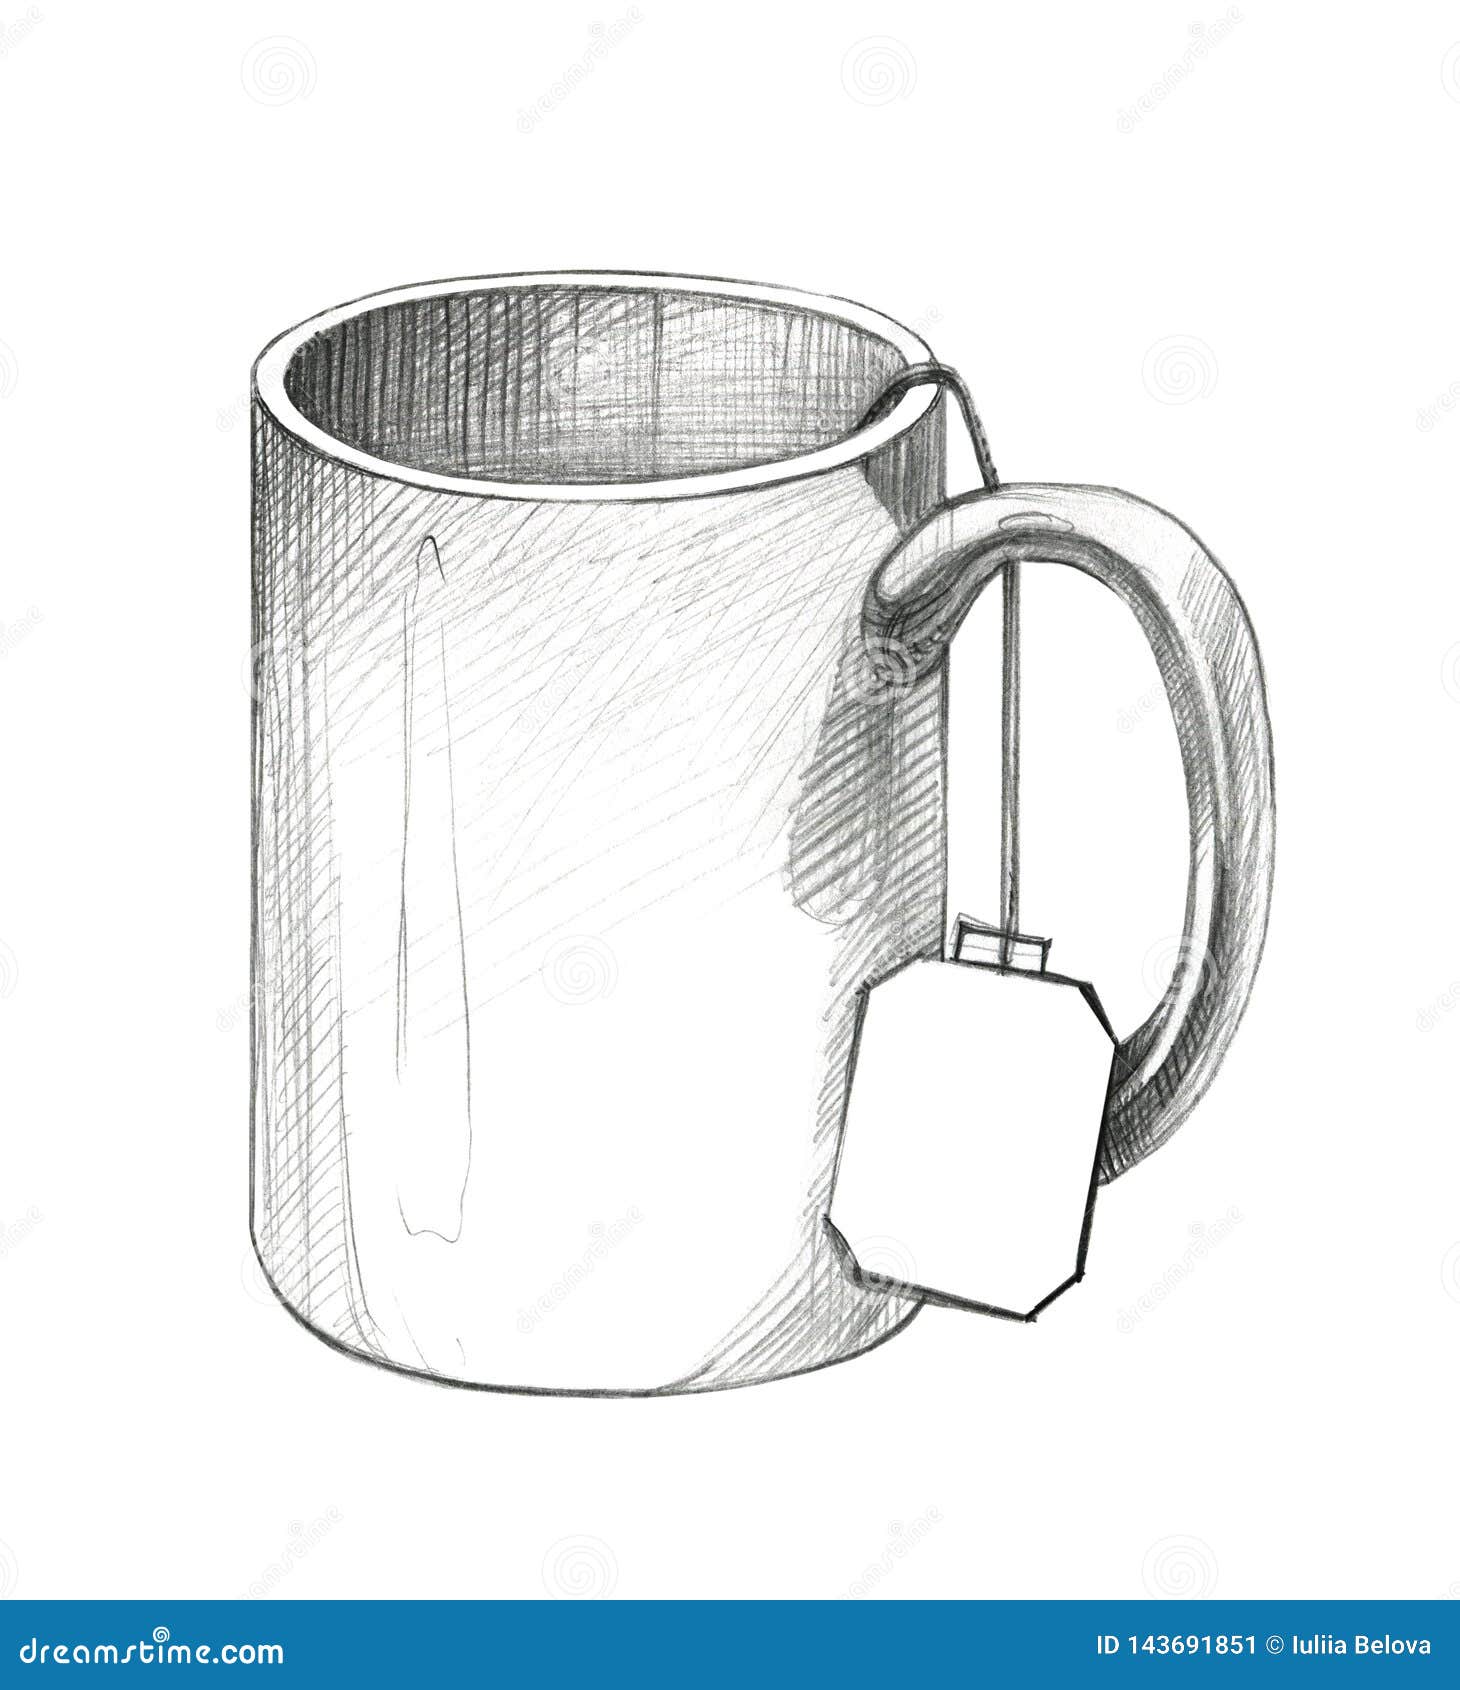 Sketch of cup Royalty Free Vector Image - VectorStock